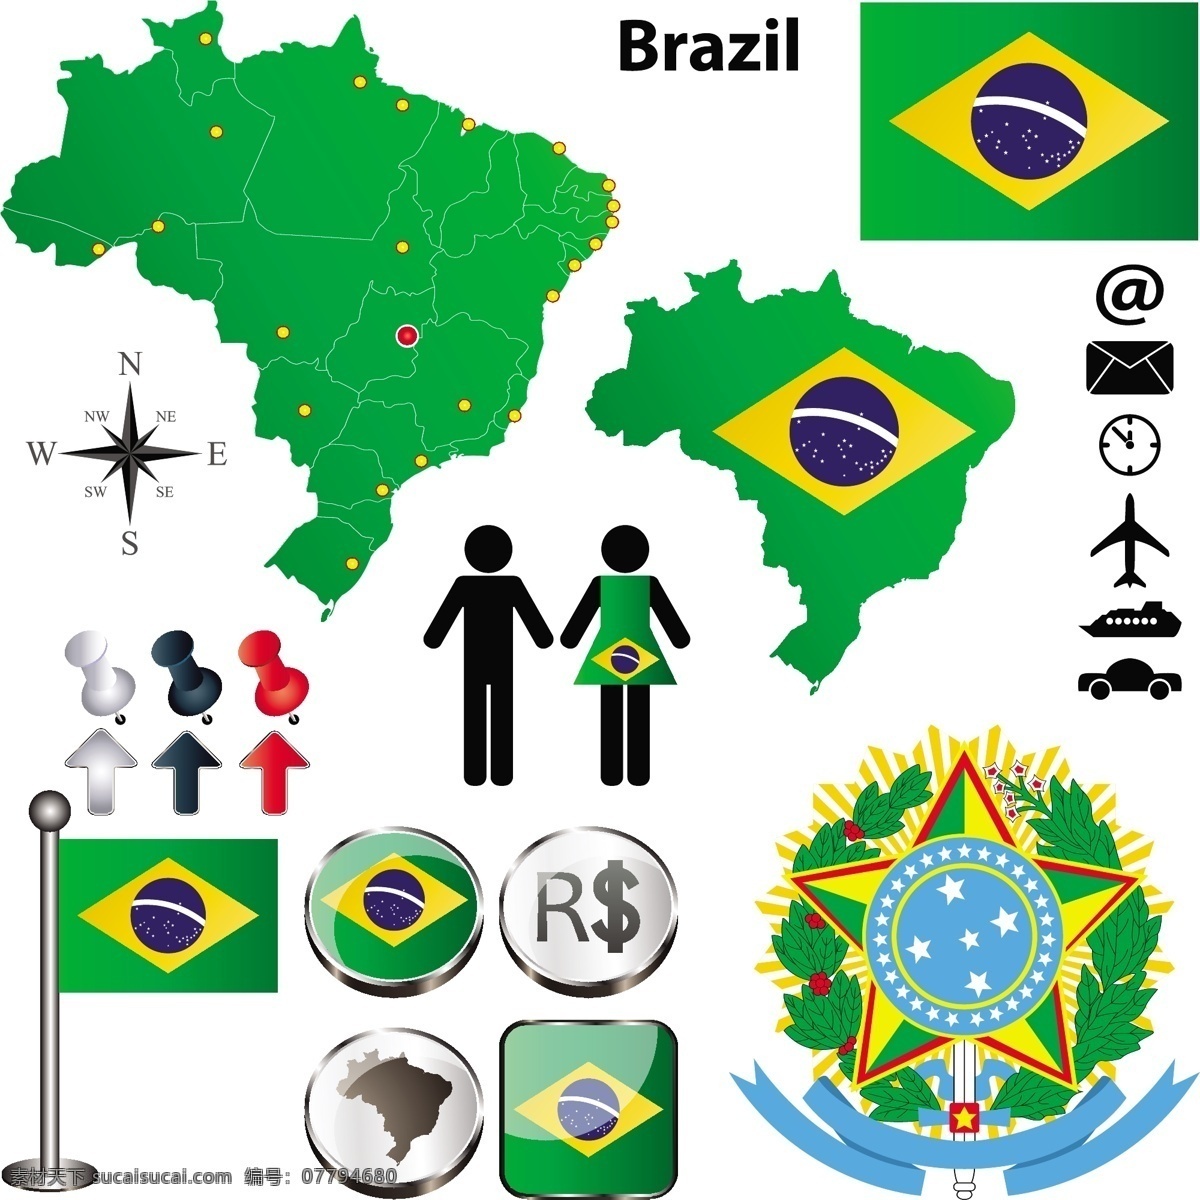 巴西地图国旗 巴西国旗 地图 国旗图标 立体按钮 图钉 国徽 空间环境 矢量素材 白色